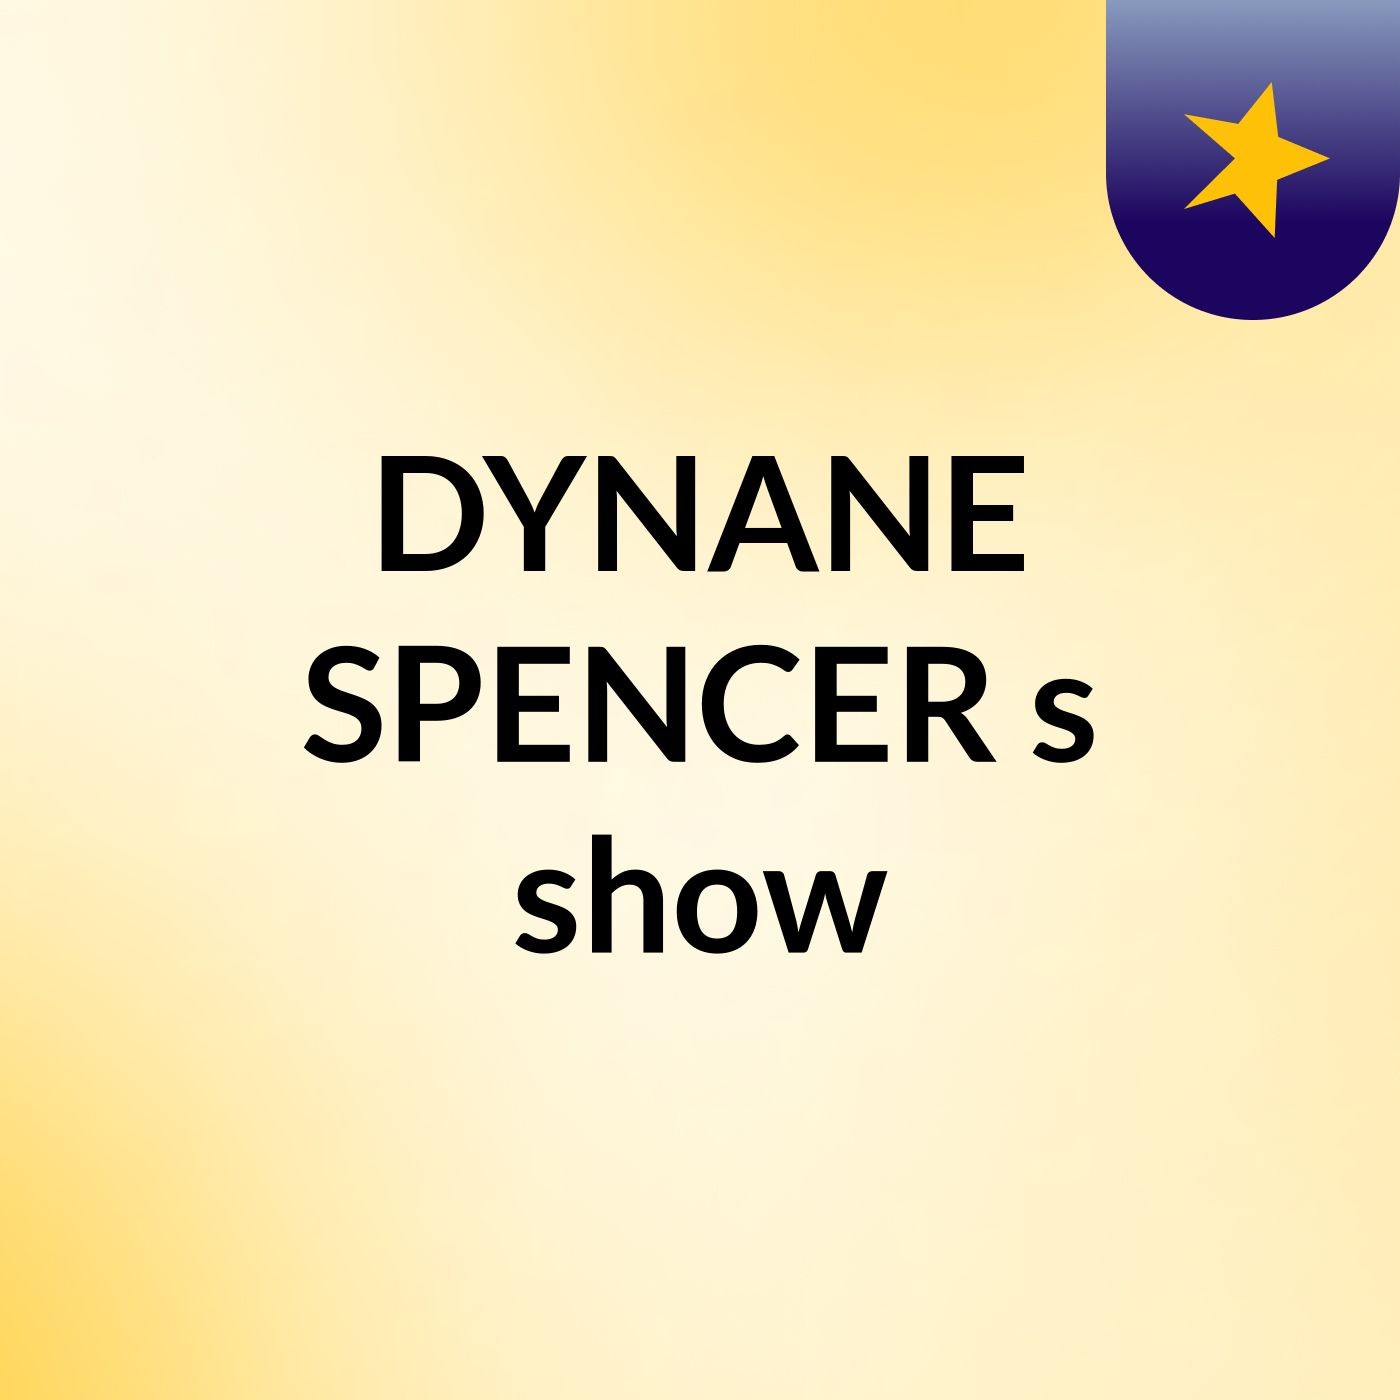 DYNANE SPENCER's show